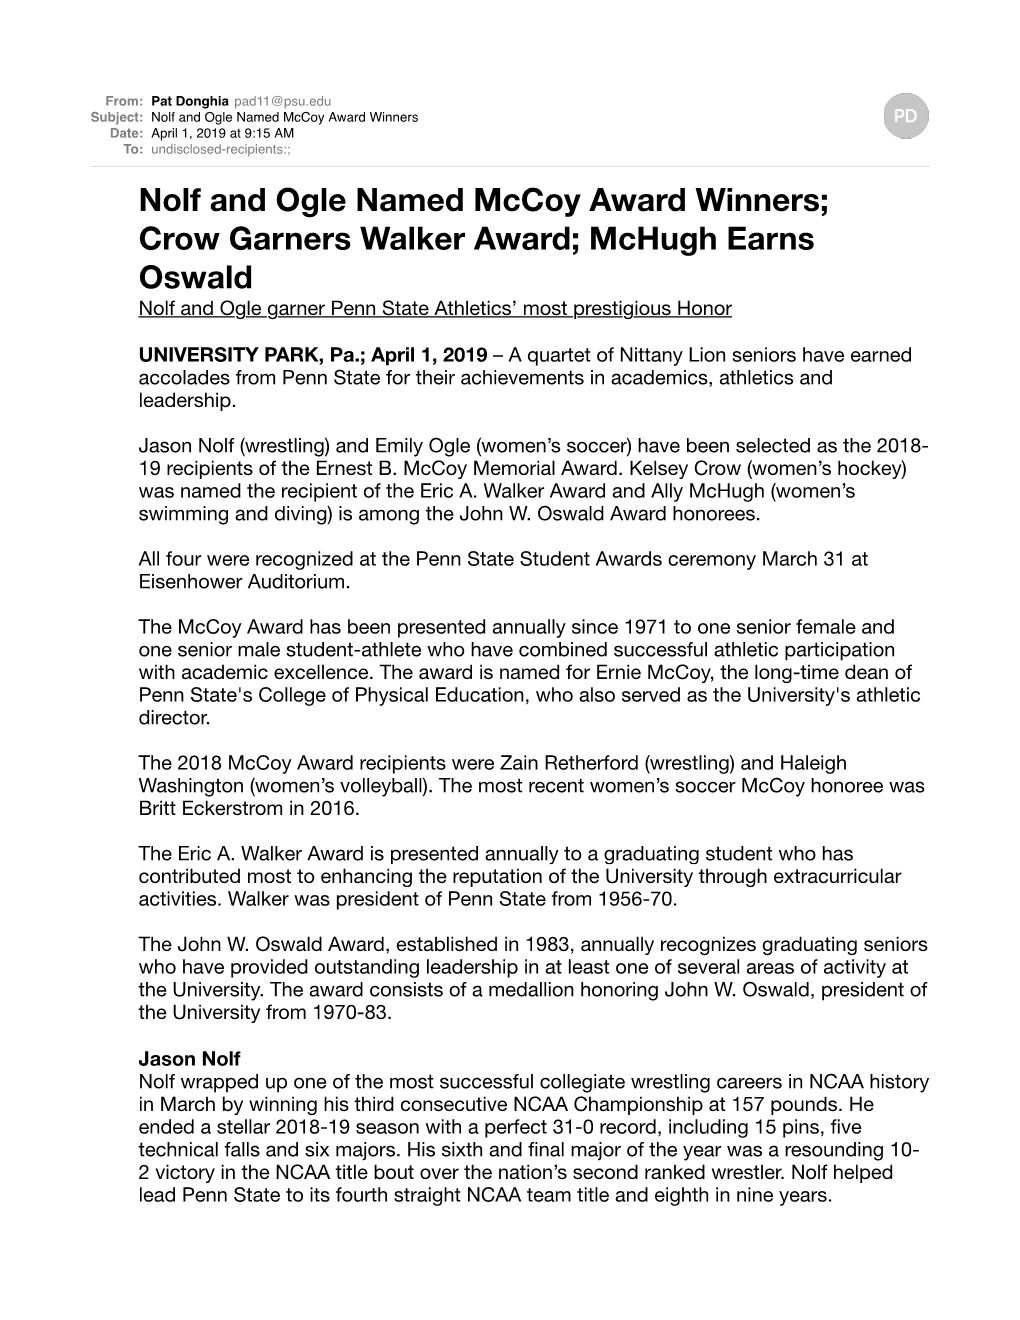 Nolf and Ogle Named Mccoy Award Winners